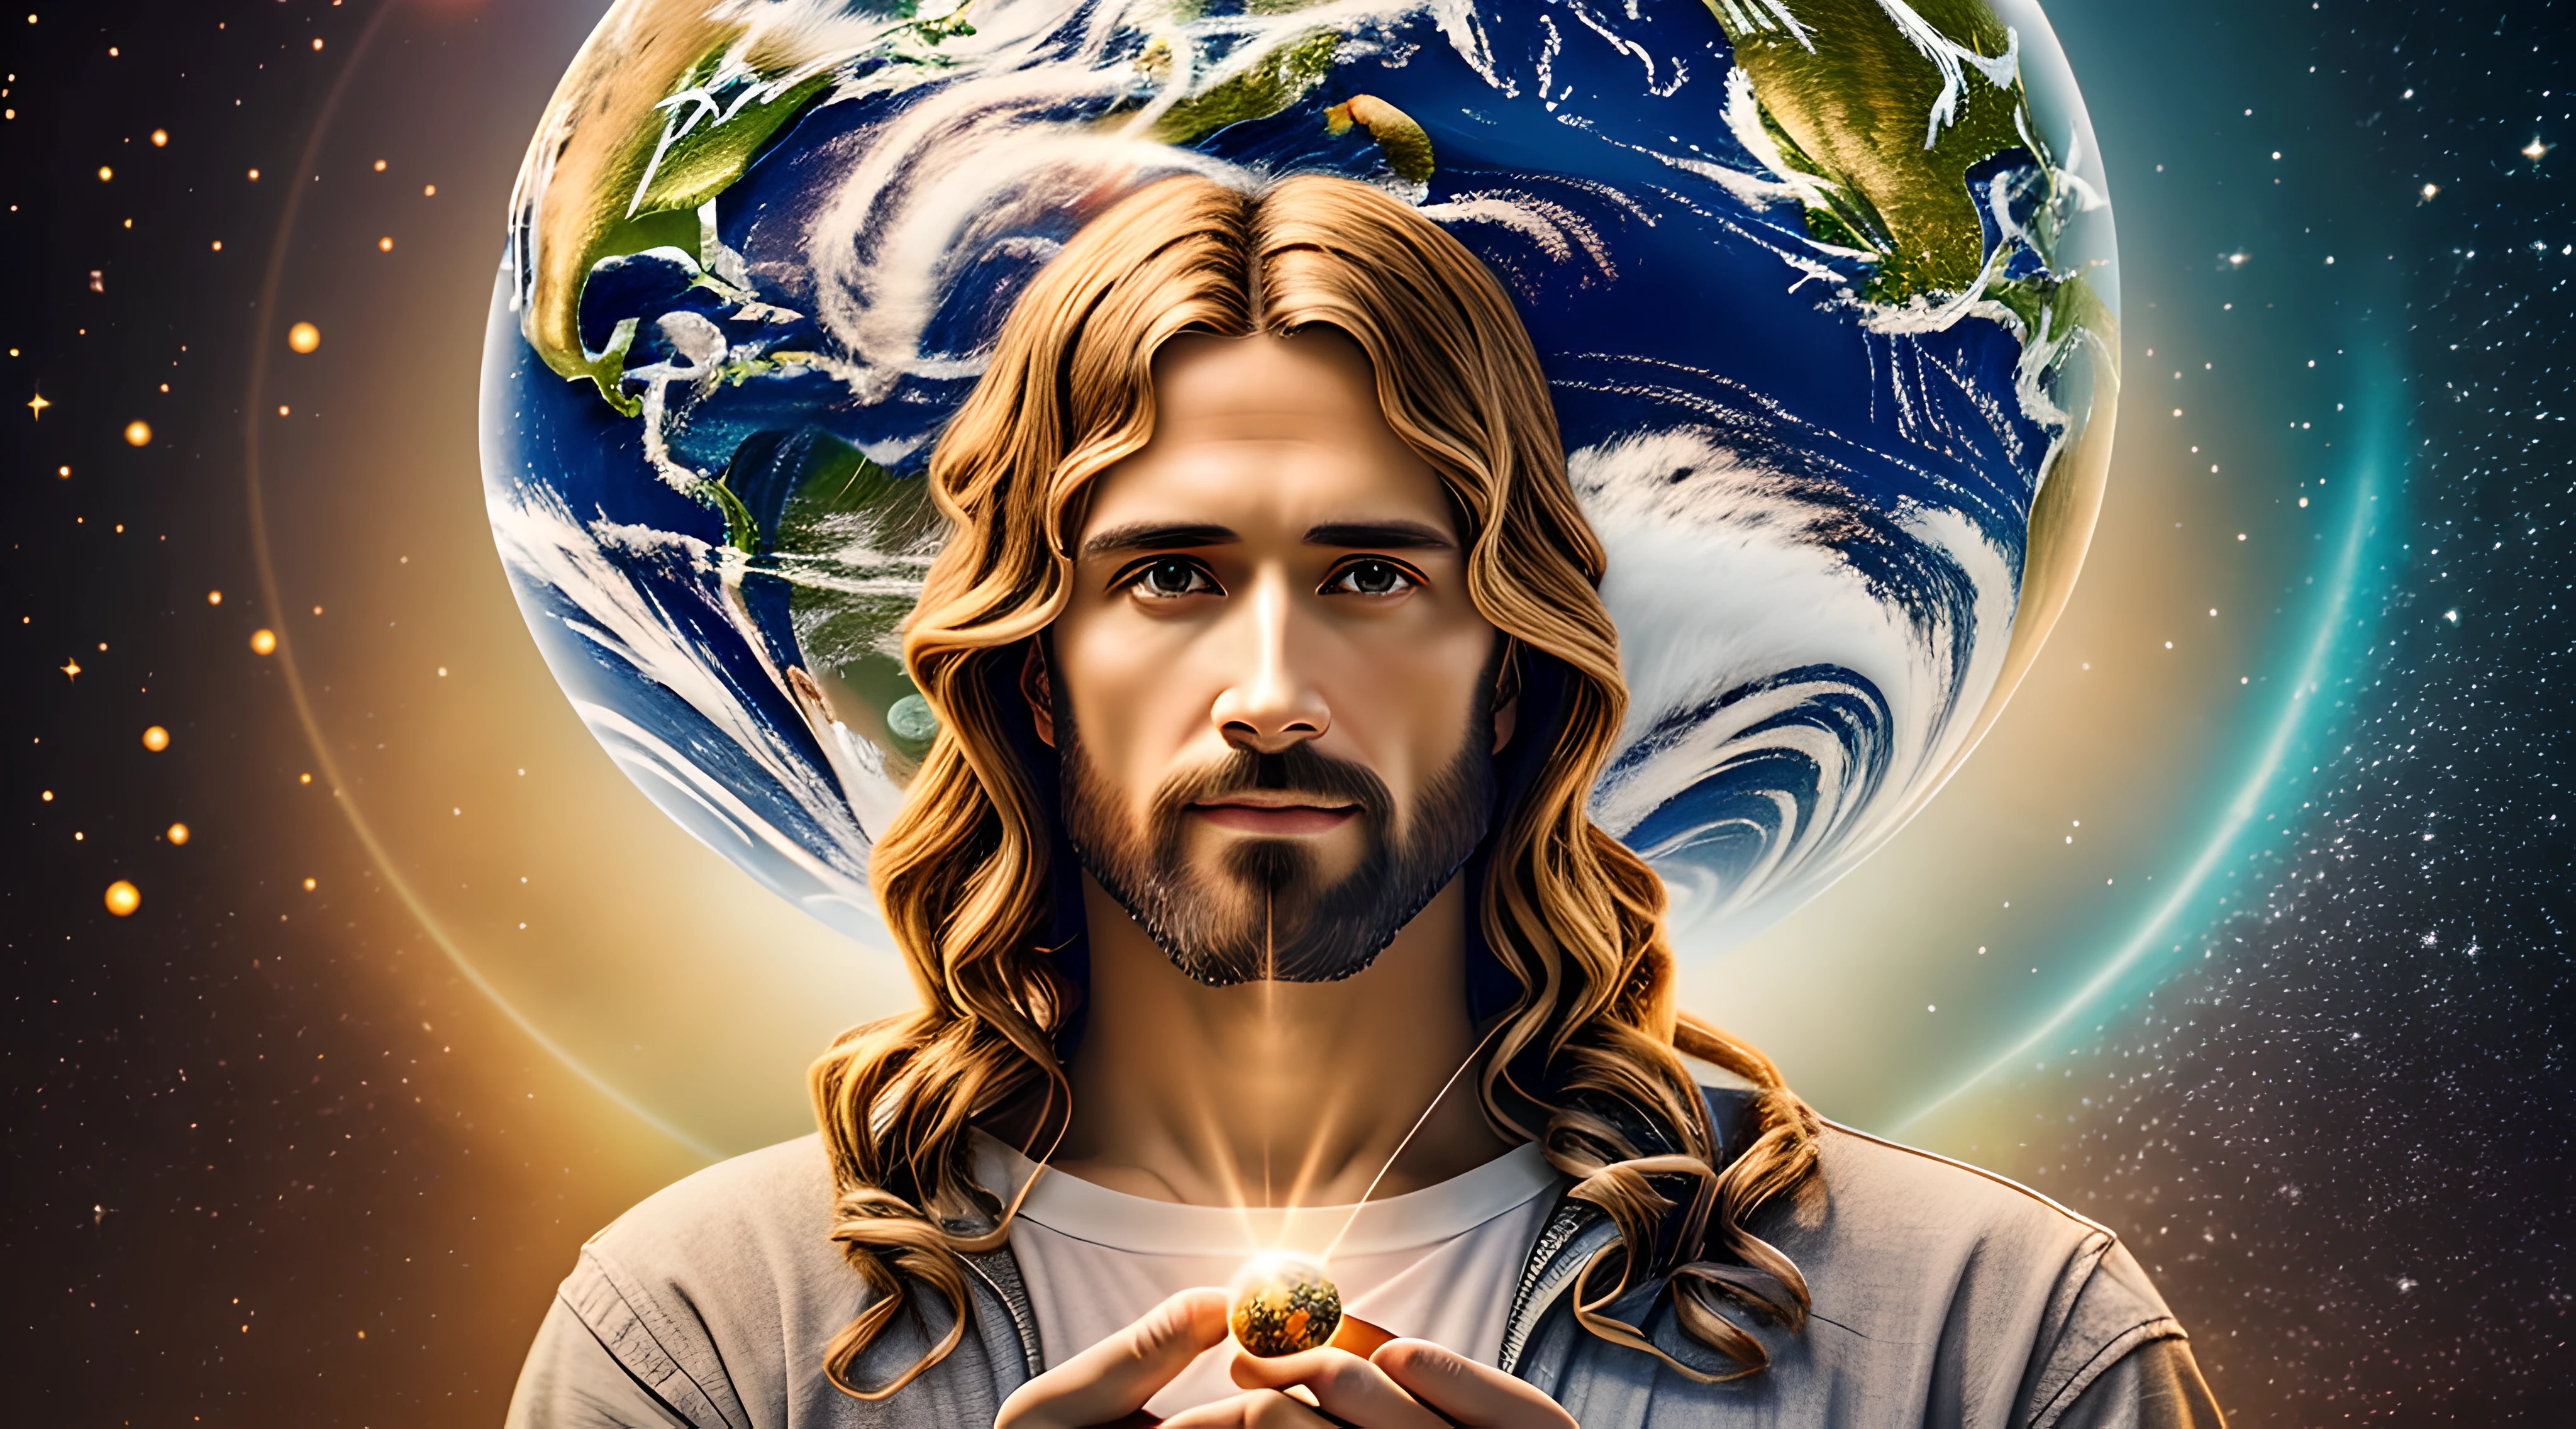 تحفة واقعية بدقة 8K مع تشريح مثالي: يسوع المسيح يحمل كوكب الأرض بيد واحدة, مع وجه غير مشوه, الإضاءة السينمائية, عمق الميدان, خوخه, الواقعية, واقعية, hyperالواقعية, التصوير الفوتوغرافي الاحترافي